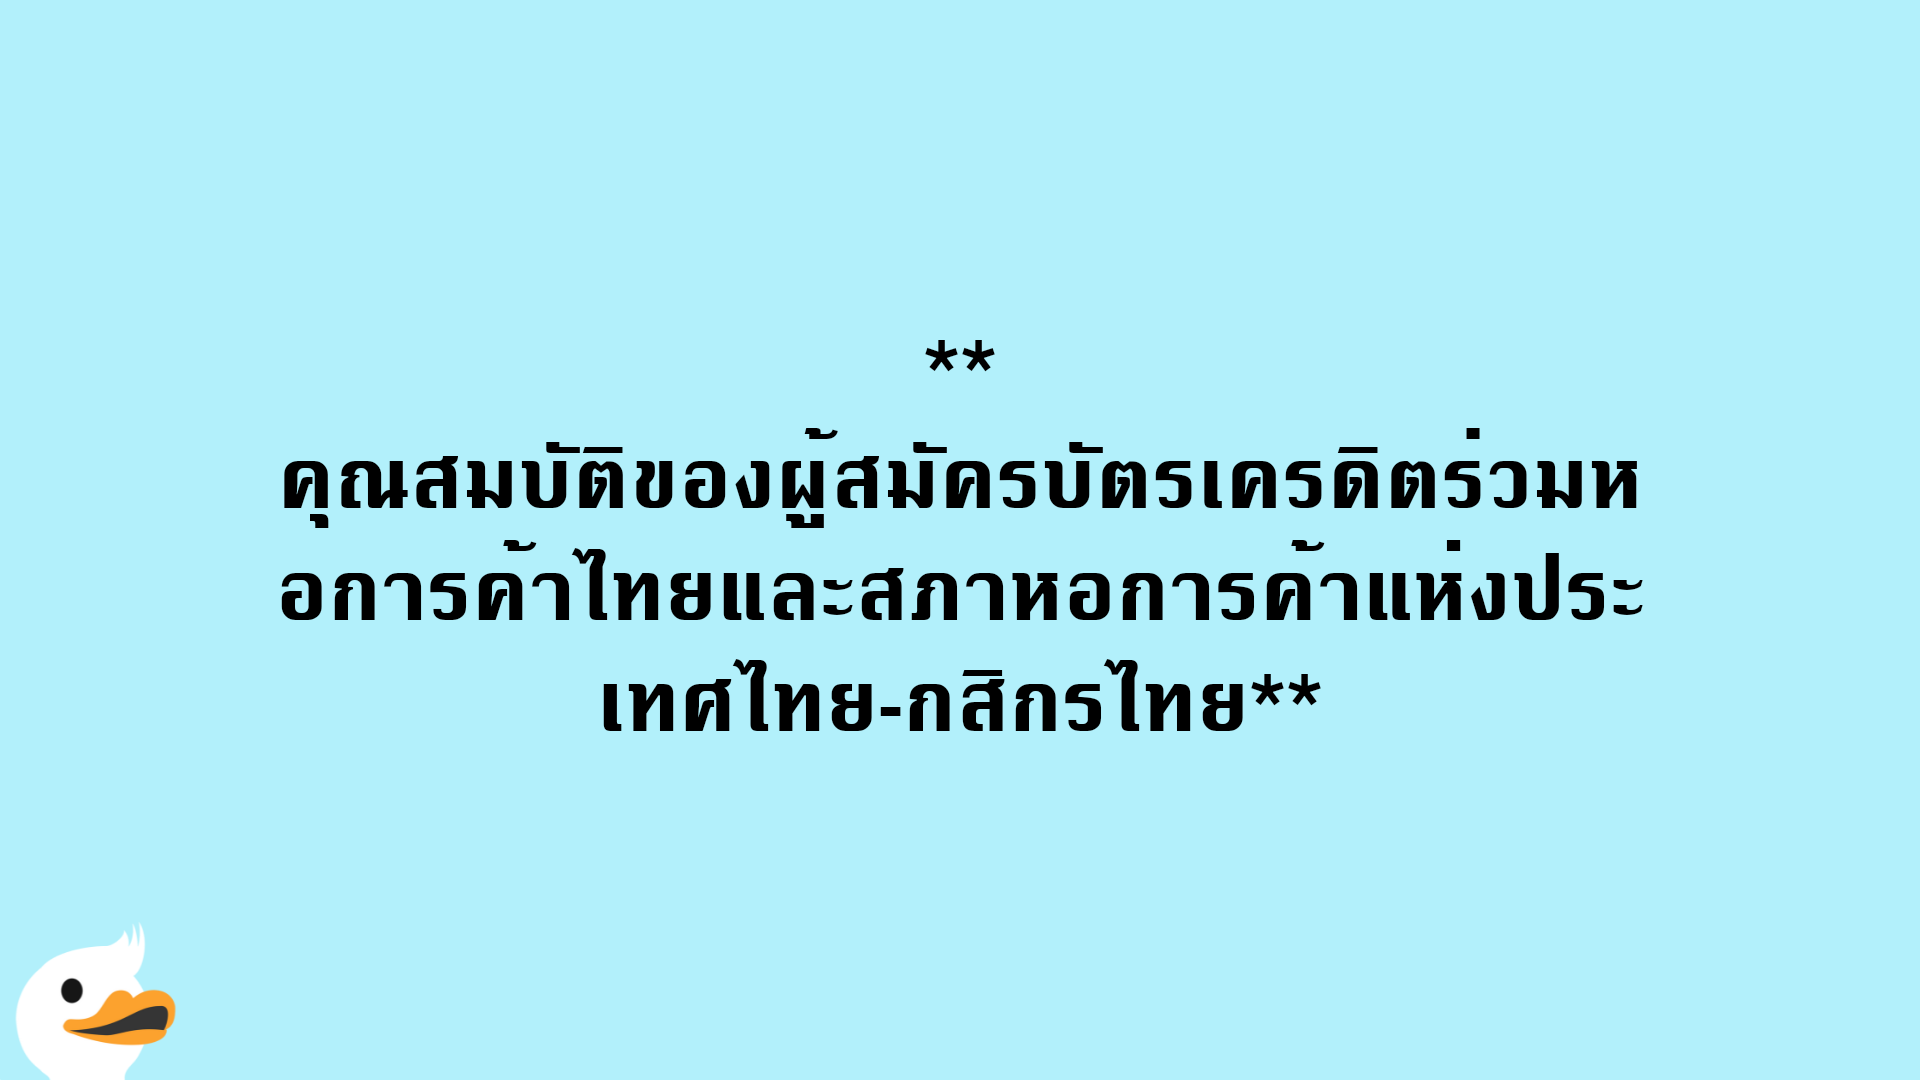 คุณสมบัติของผู้สมัครบัตรเครดิตร่วมหอการค้าไทยและสภาหอการค้าแห่งประเทศไทย-กสิกรไทย